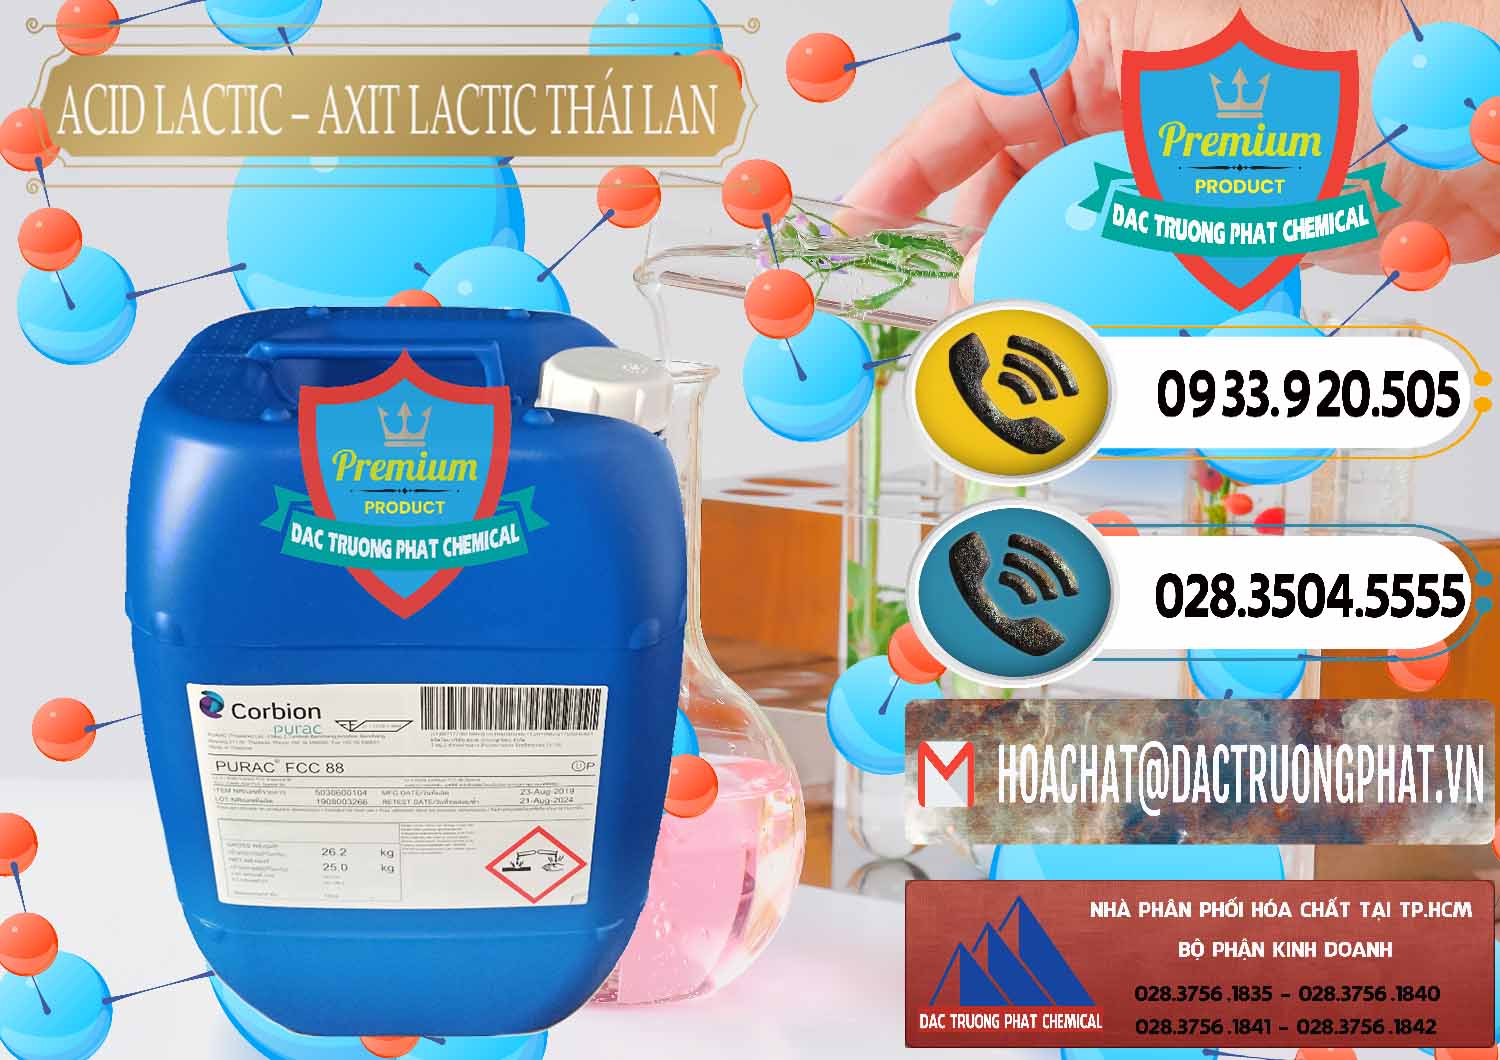 Cty phân phối ( bán ) Acid Lactic – Axit Lactic Thái Lan Purac FCC 88 - 0012 - Công ty chuyên cung cấp ( kinh doanh ) hóa chất tại TP.HCM - hoachatdetnhuom.vn